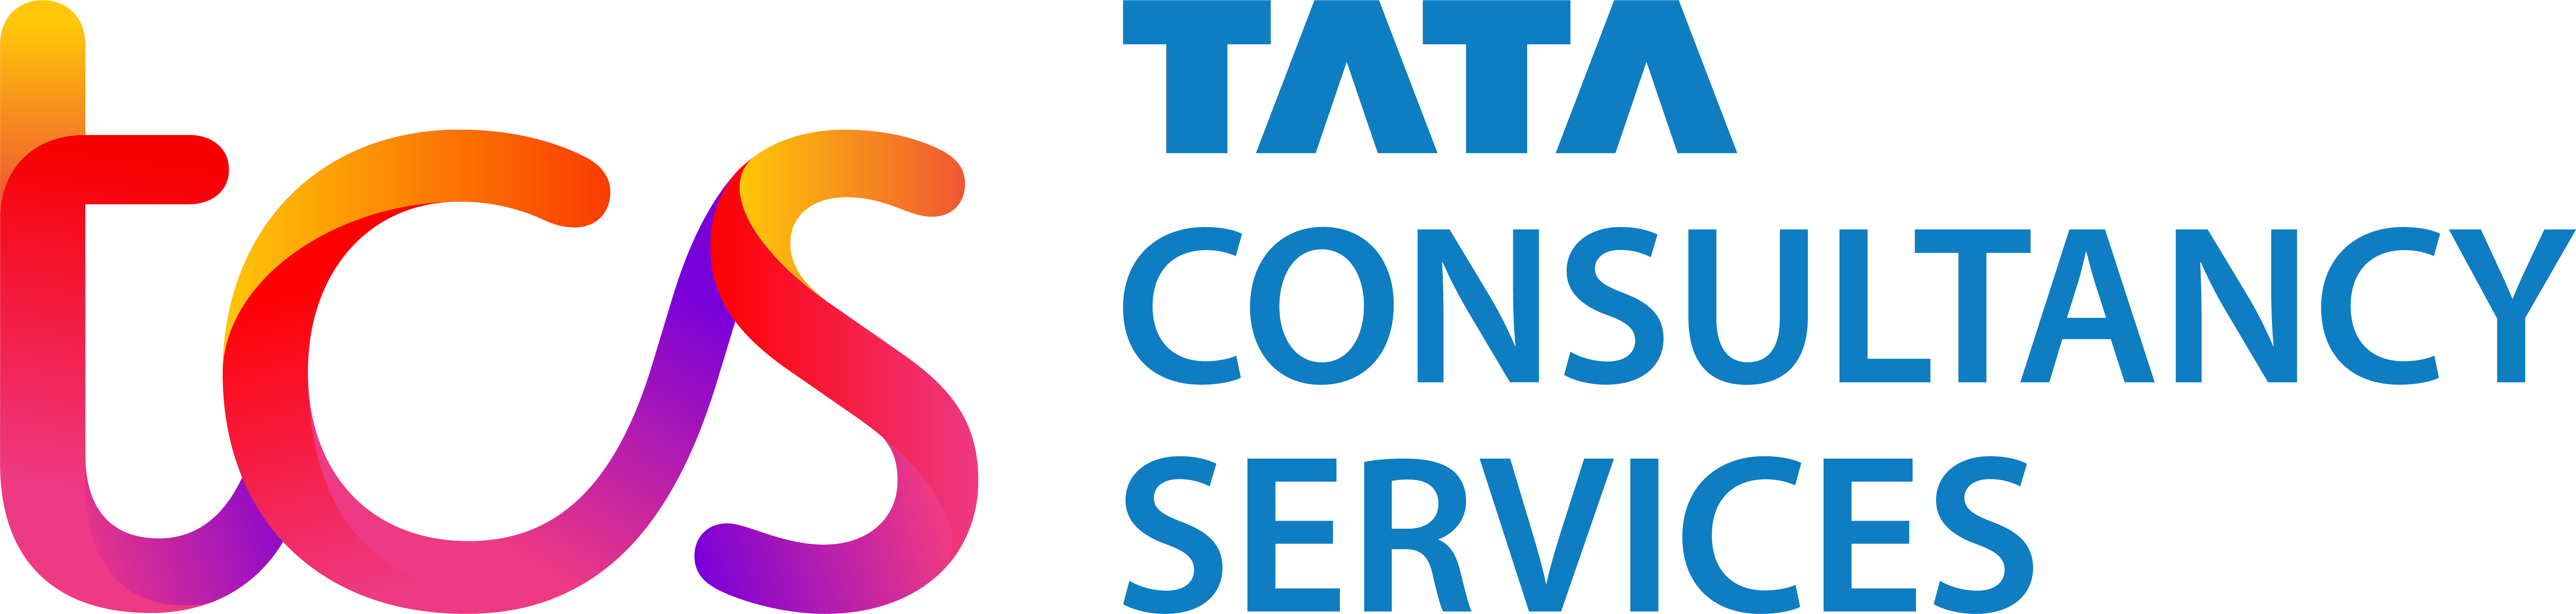 PT. TATA CONSULTANCY SERVICES INDONESIA logo